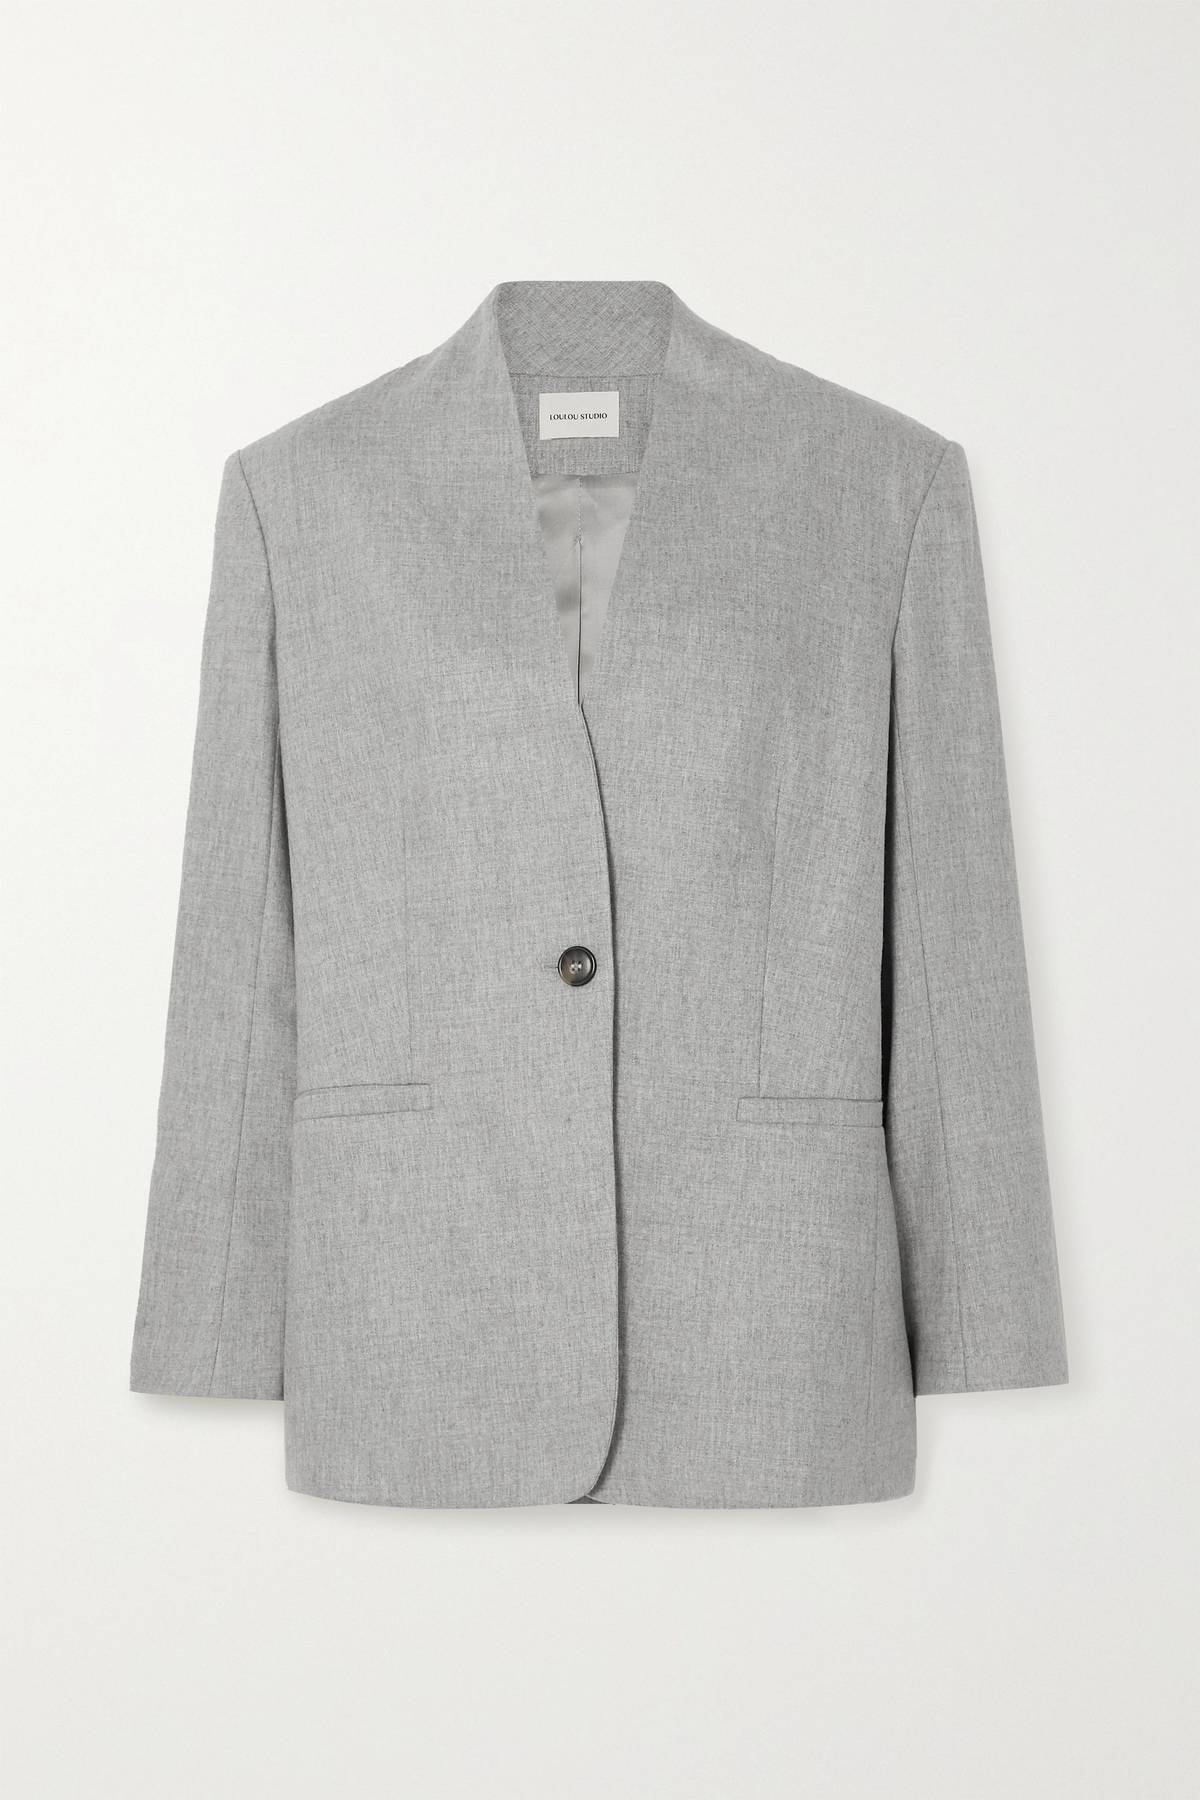 Chiếc blazer màu xám từ Loulou Studio.